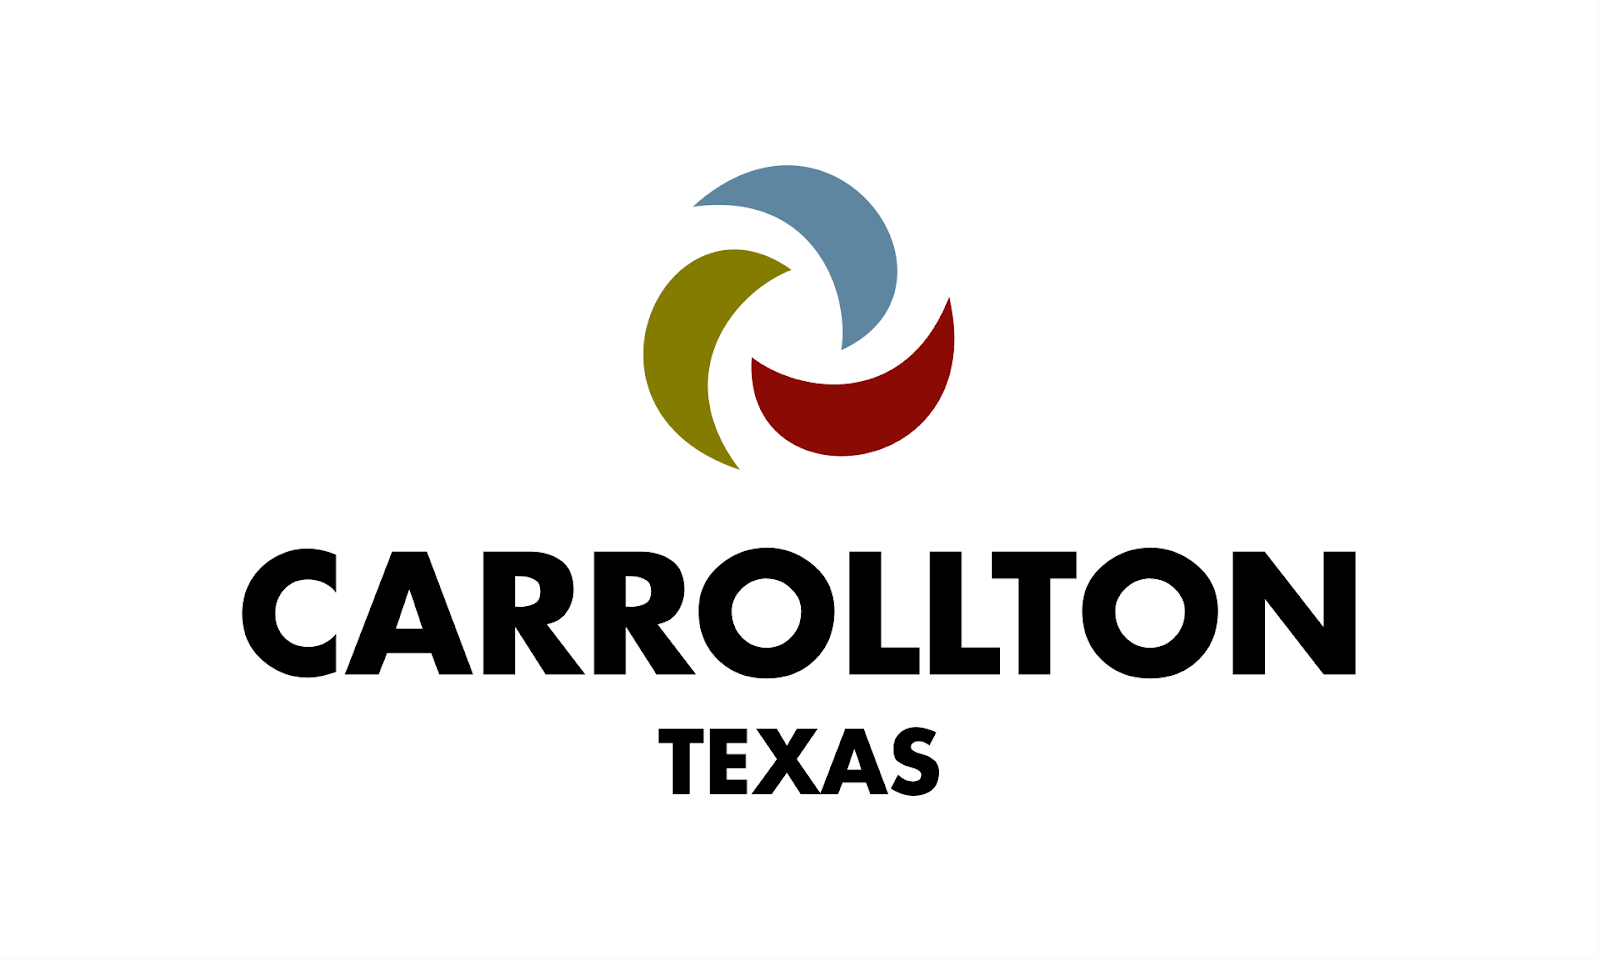  AC repair Carrollton, Carrollton HVAC service, Carrollton plumber, Furnace service Carrollton